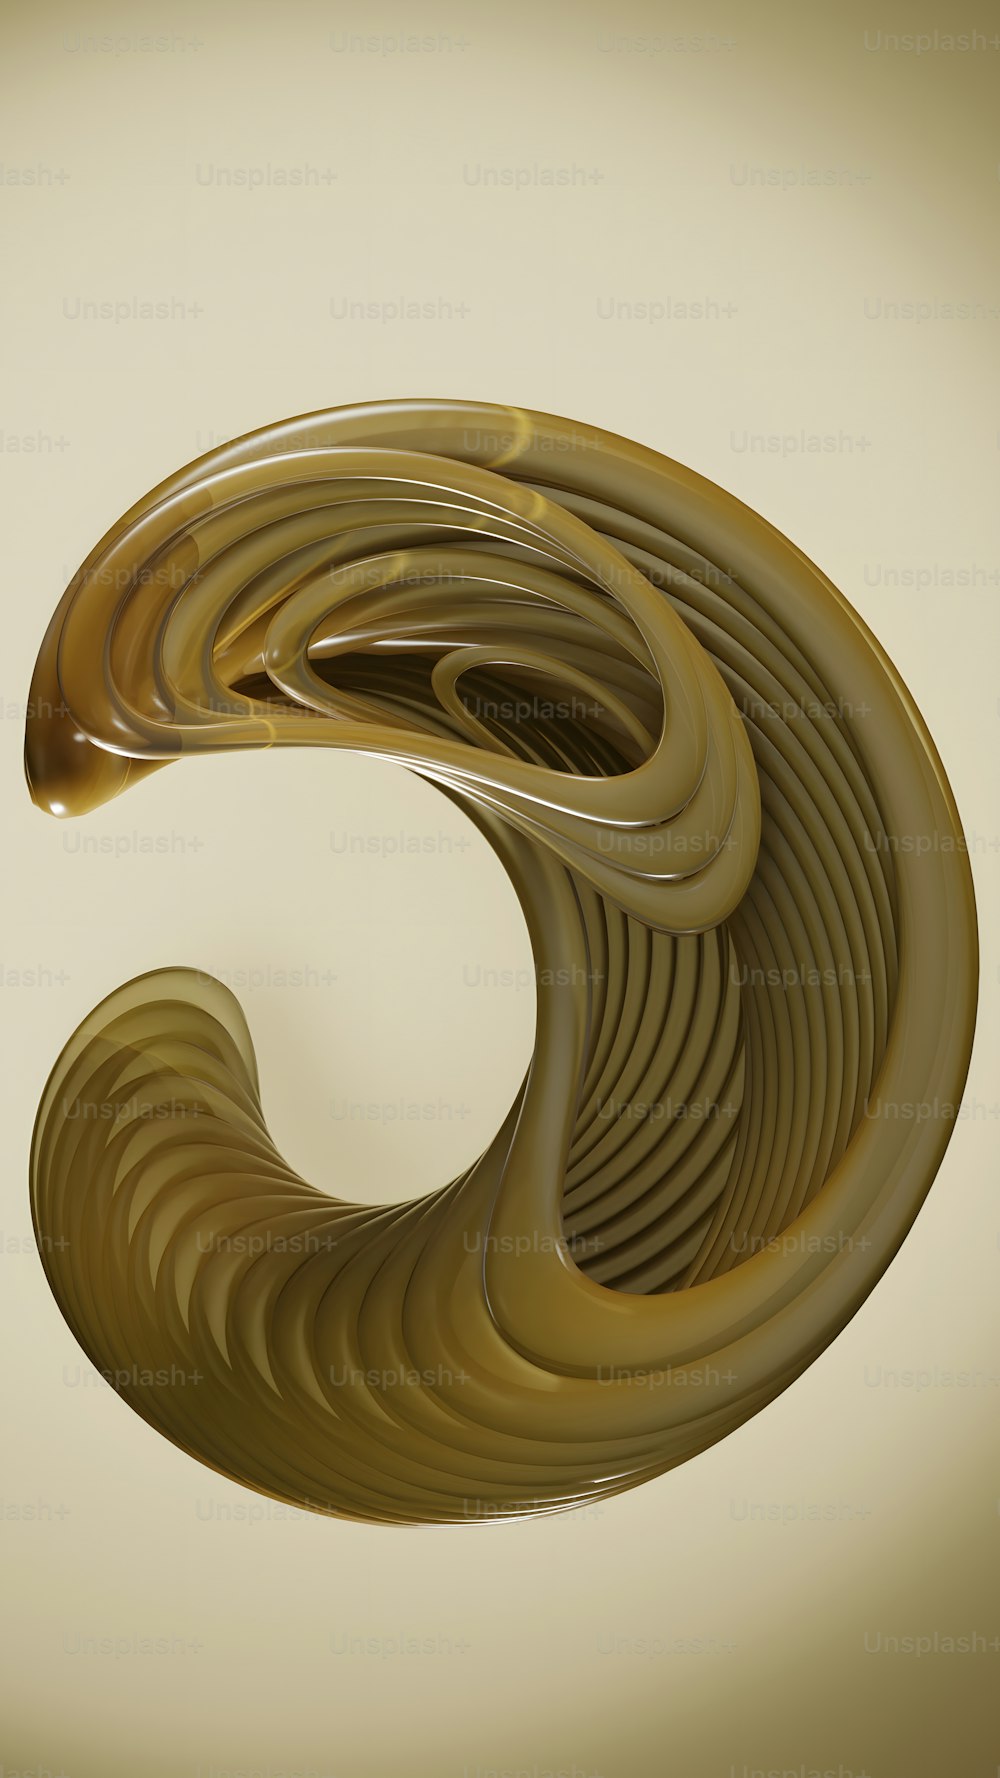 une image générée par ordinateur d’un objet ressemblant à une spirale